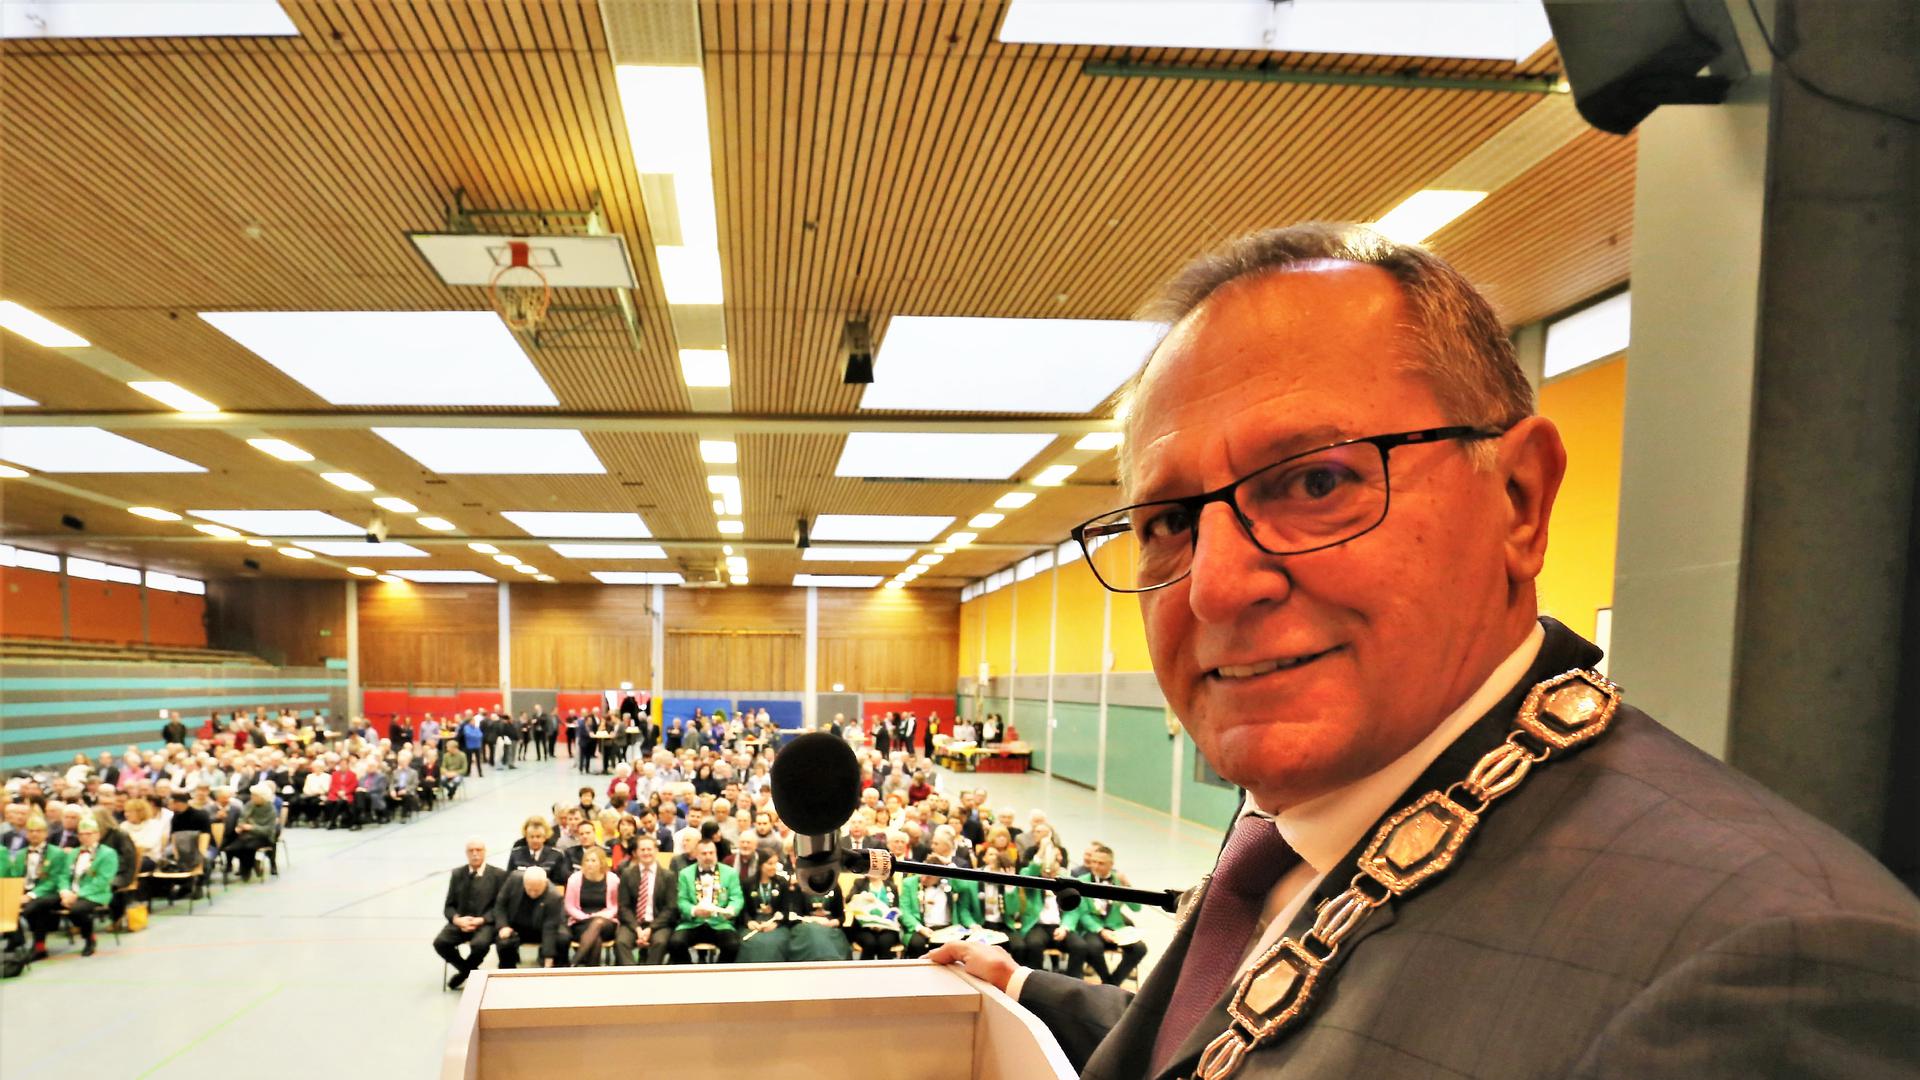 Waghäusels Oberbürgermeister Walter Heiler (SPD, 65) ist mit einer engagierten Rede in der Waghäuseler Wagbachhalle ins kommunalpolitische Jahr gestartet.